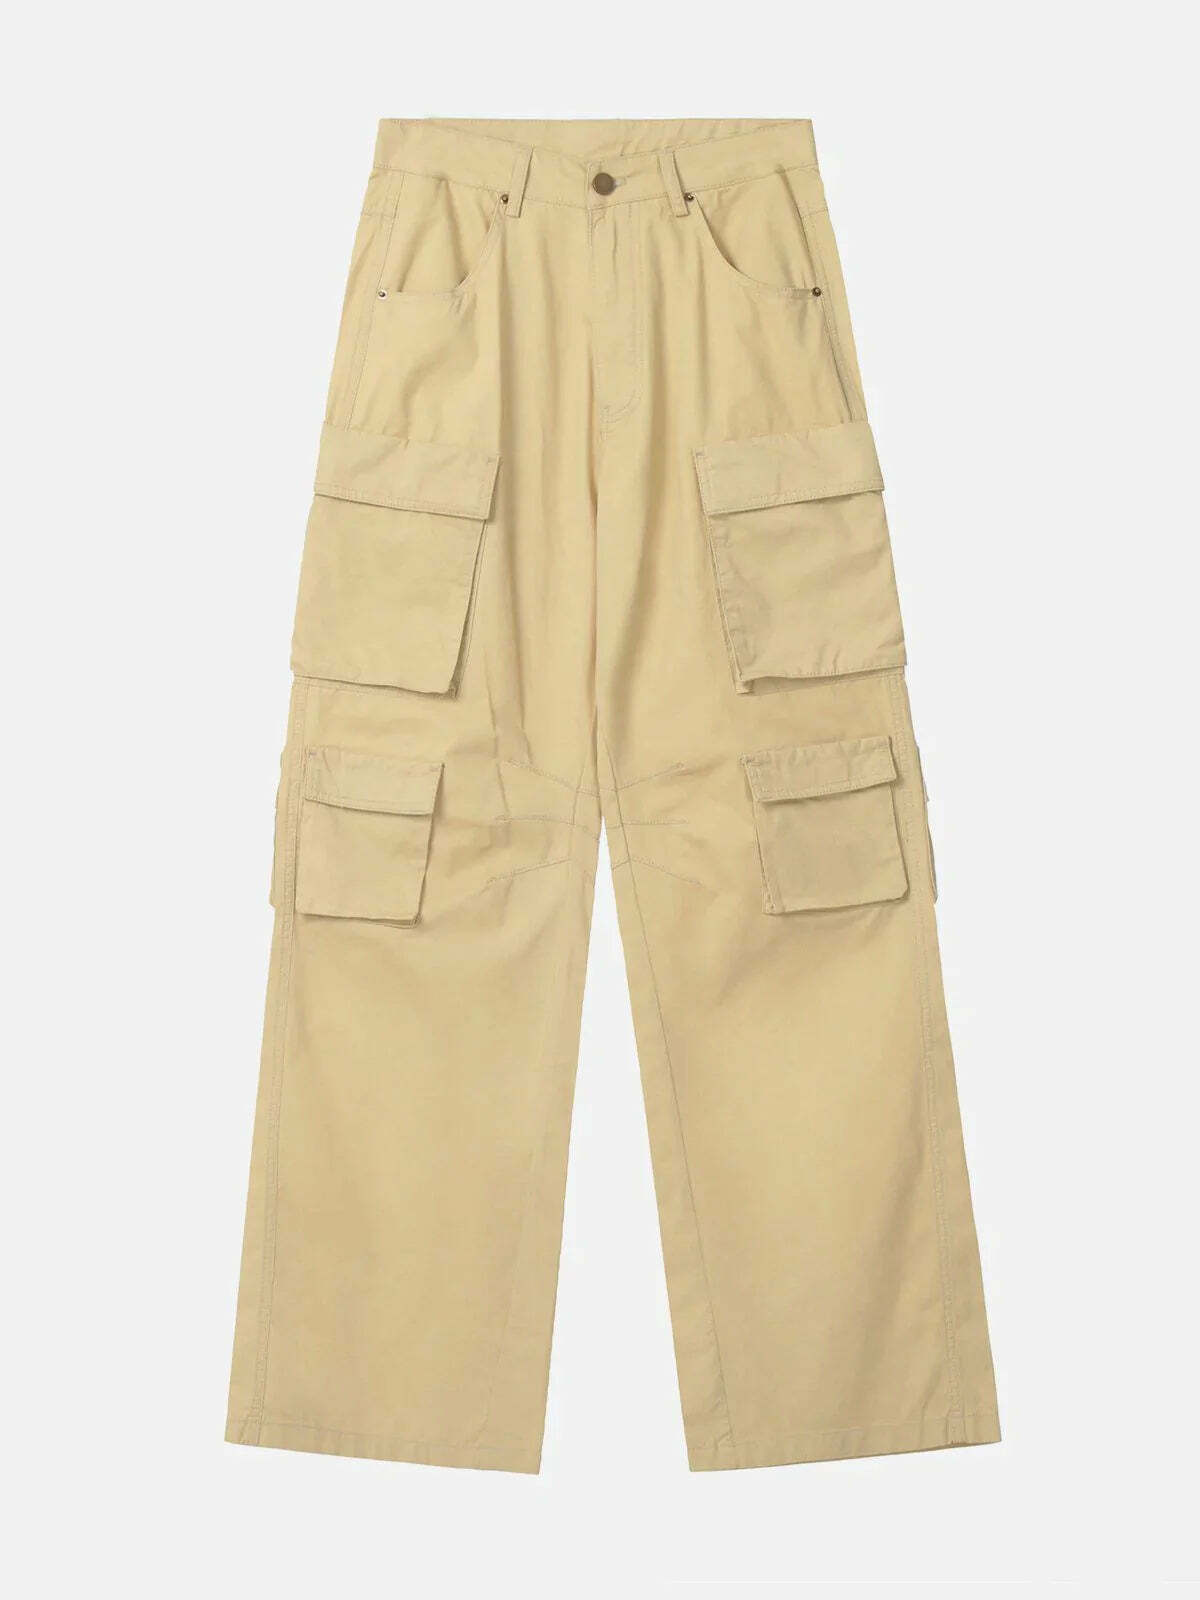 loose fit solid color pants effortlessly chic & versatile 6306